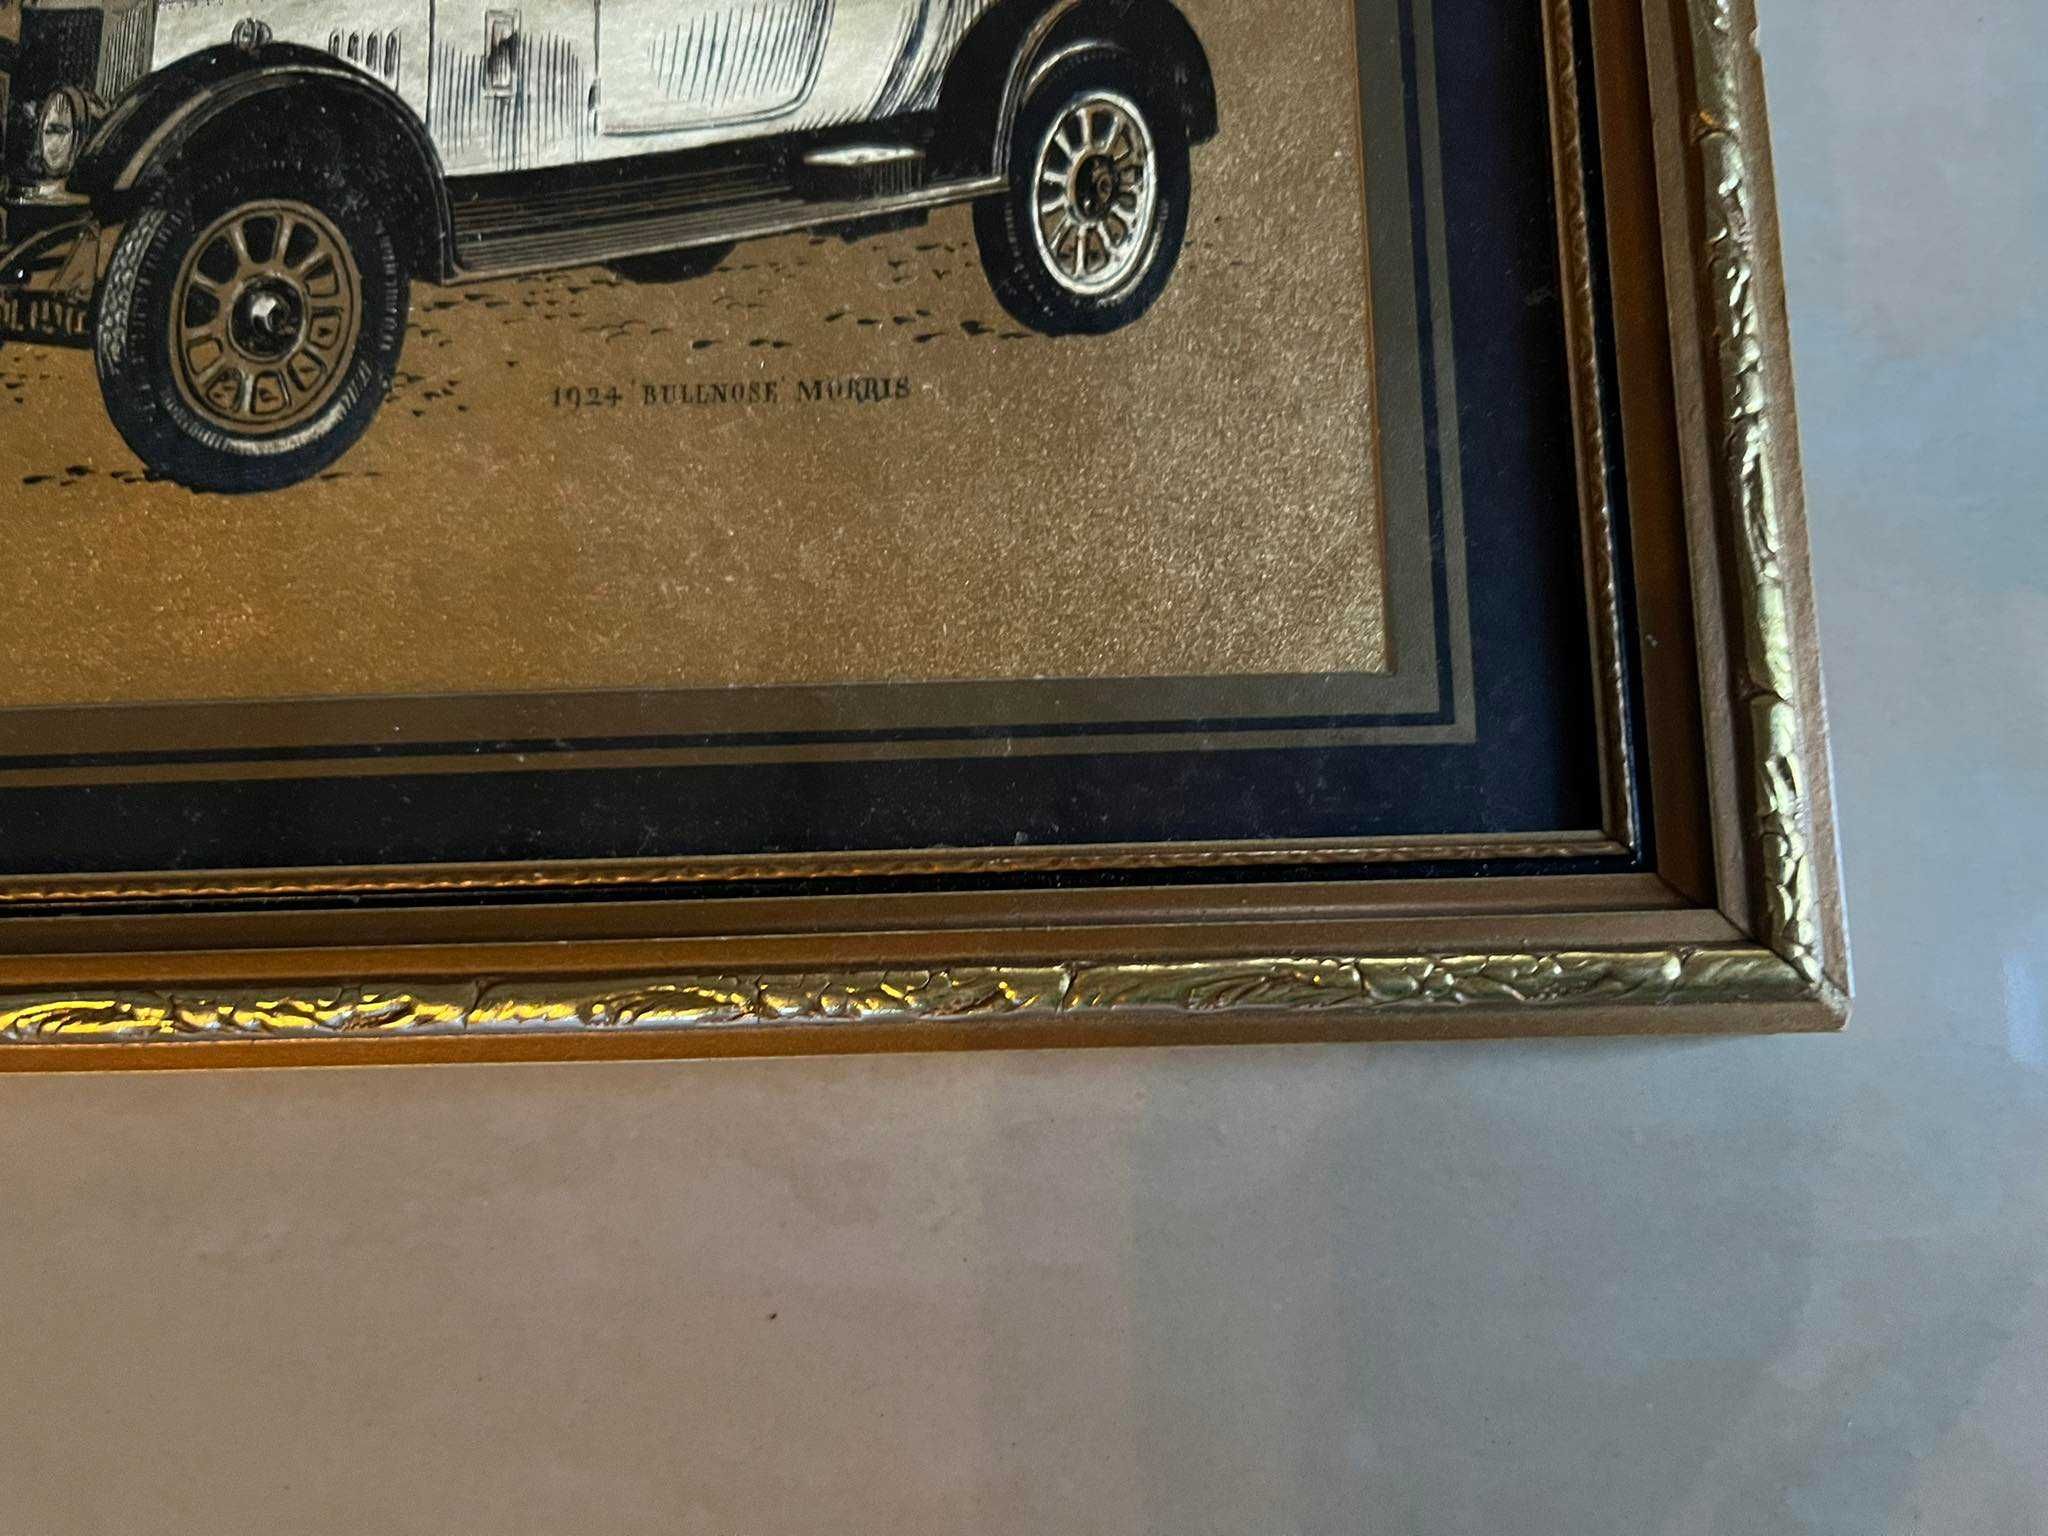 Stare Auto Rolls Silver Ghost 1909 obrazek w złotej ramie